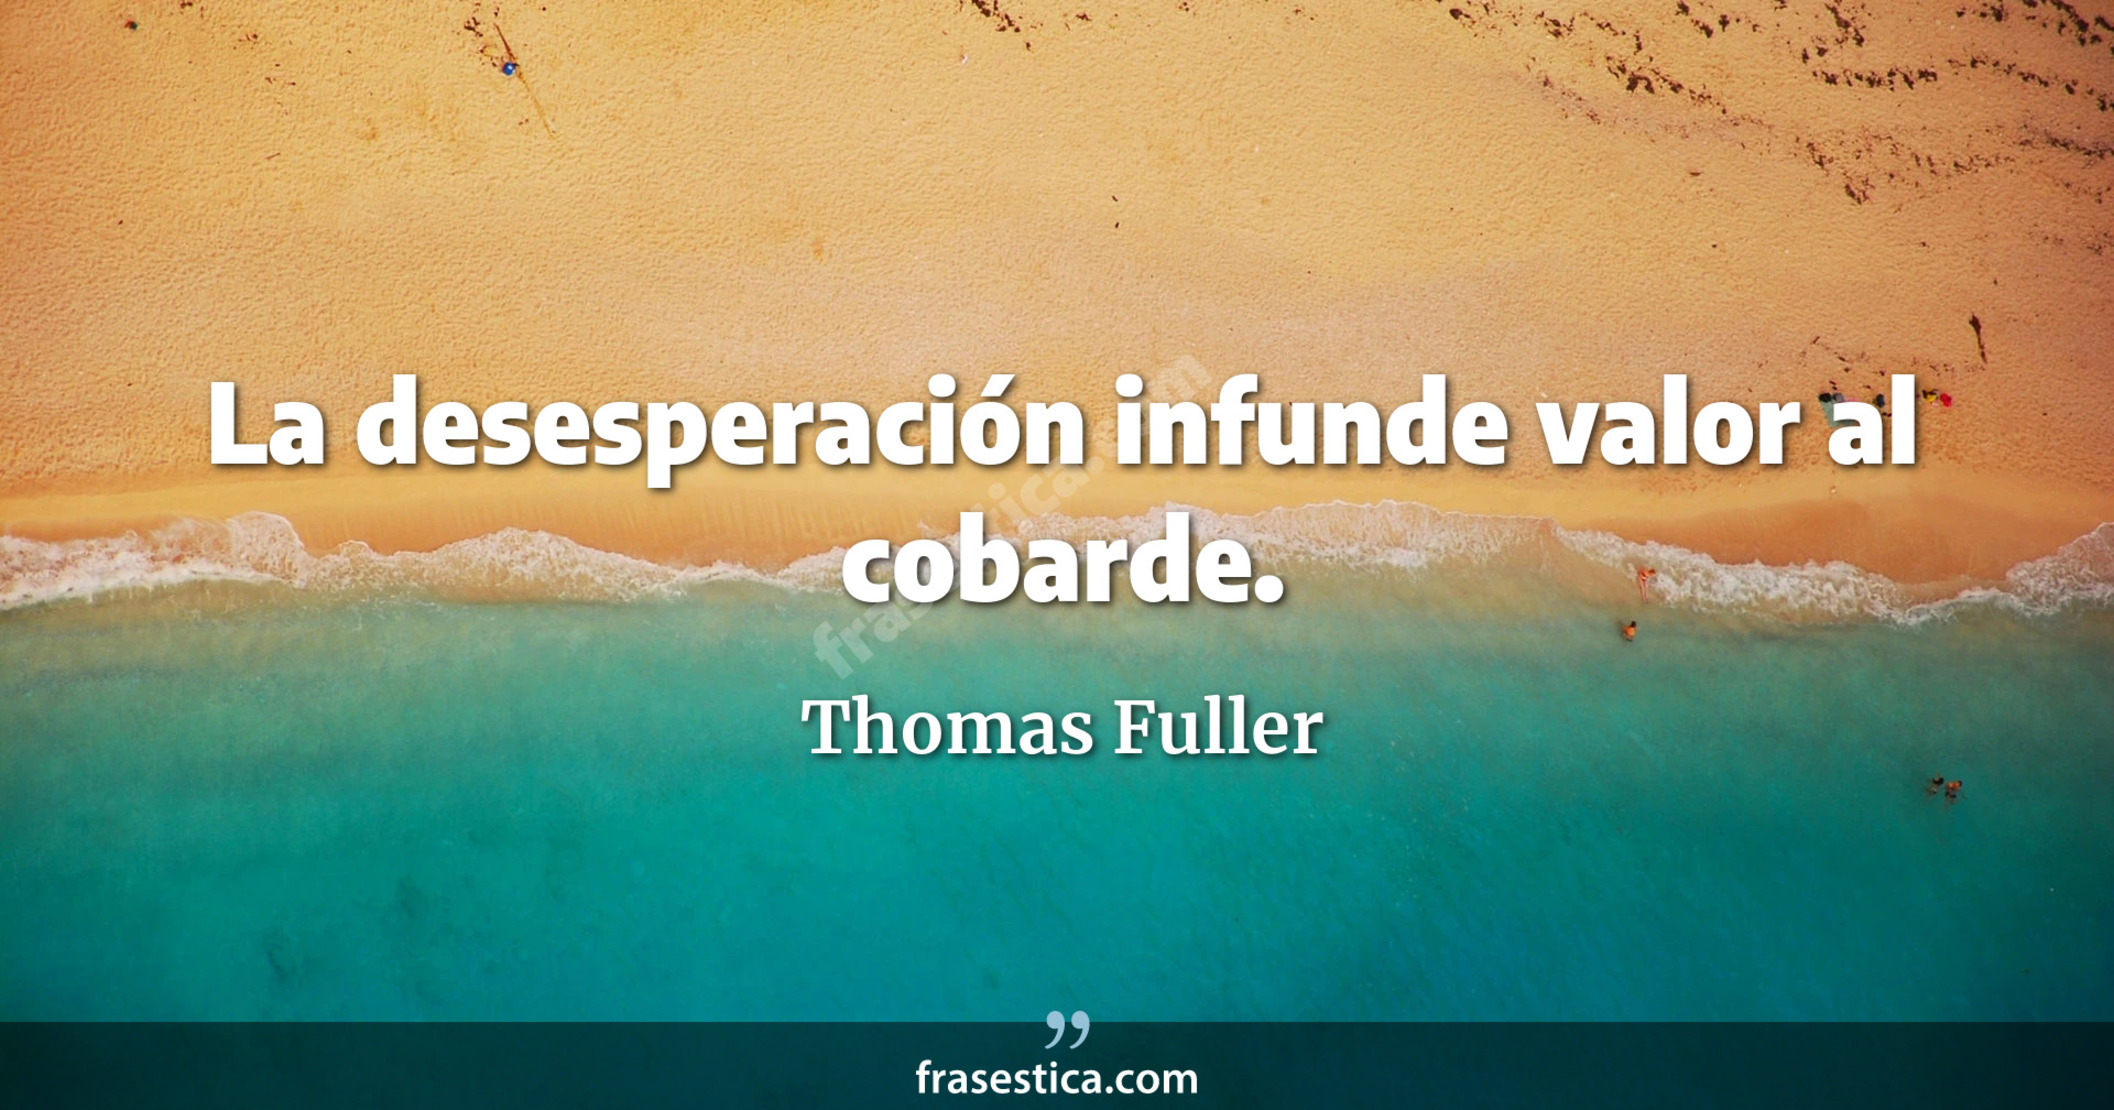 La desesperación infunde valor al cobarde. - Thomas Fuller